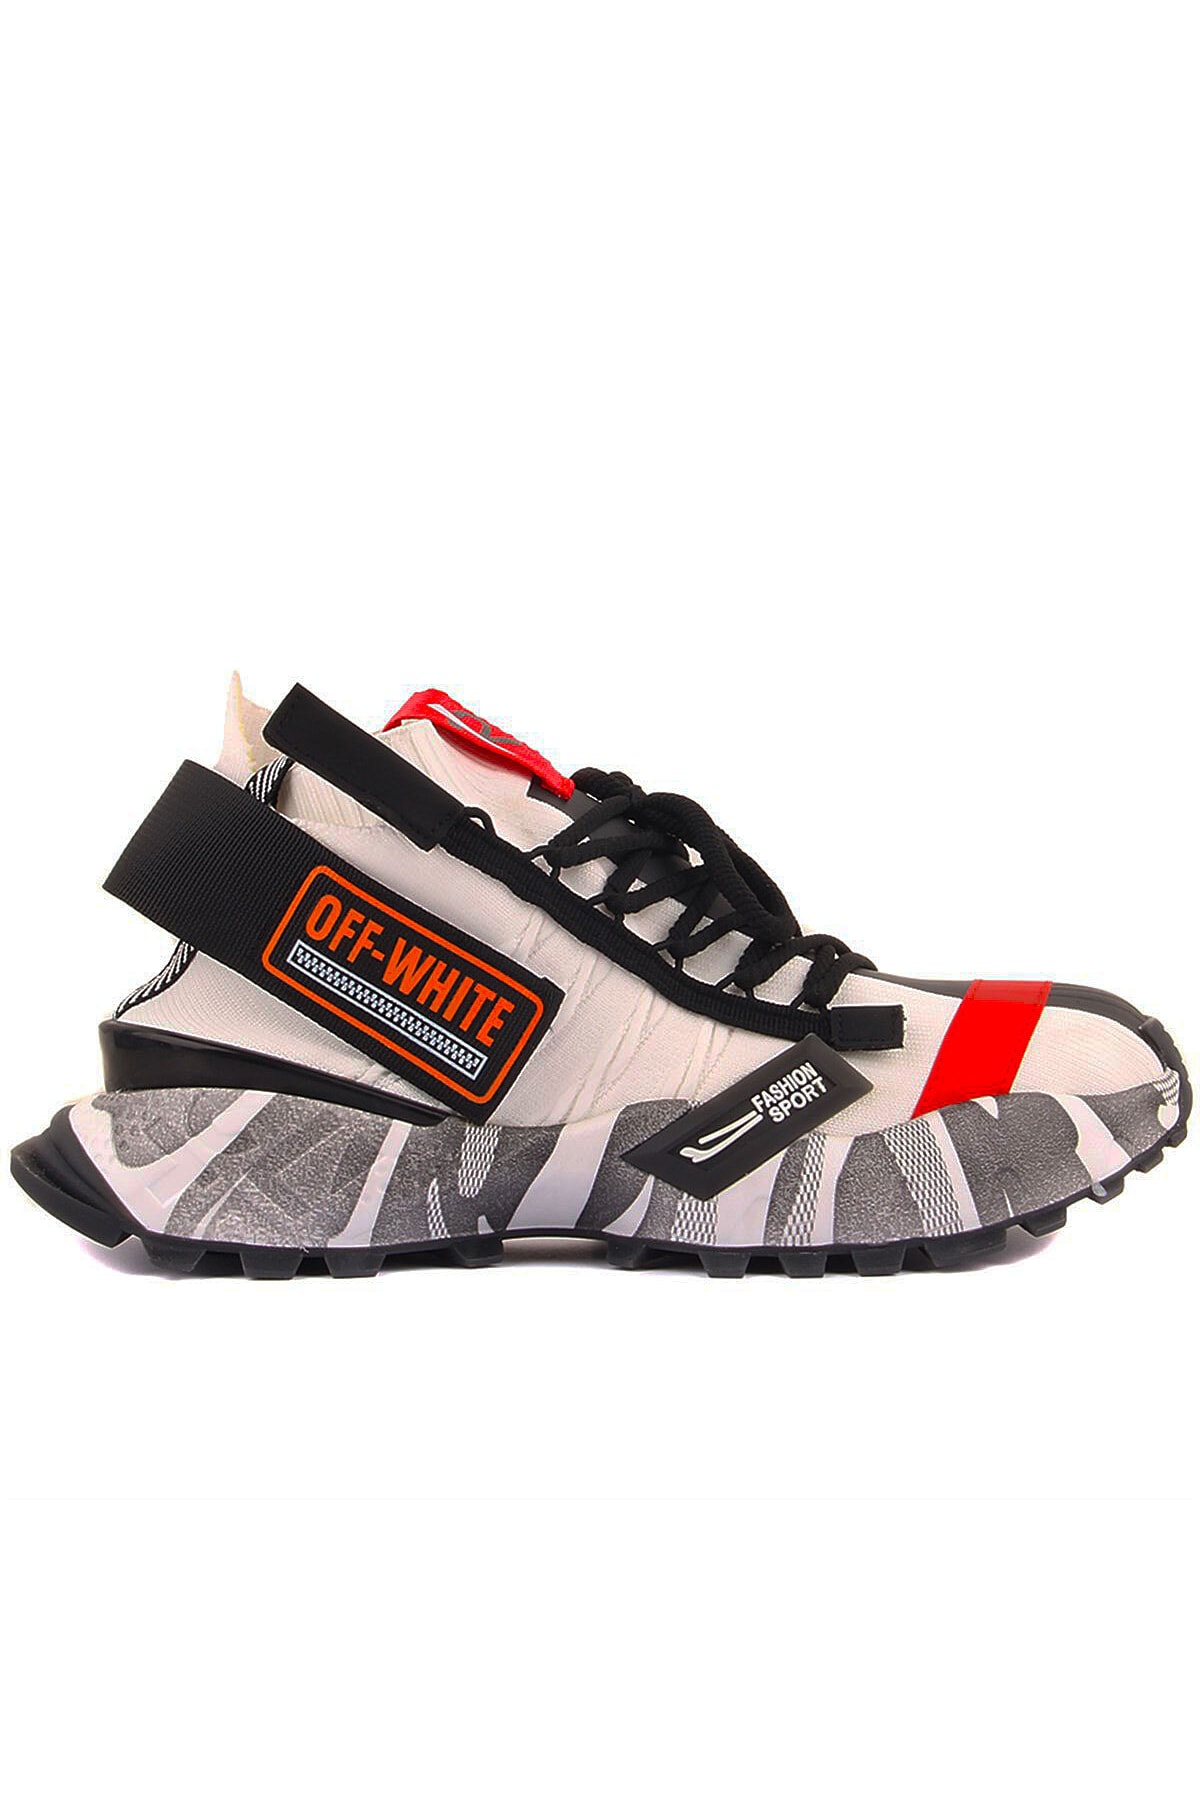 Guja Erkek Orjinal Fashion Ortapedik Kaydırmaz Taban Erkek Sneaker Spor Ayakkabı Men Trekking Sport Shoes ZN10733